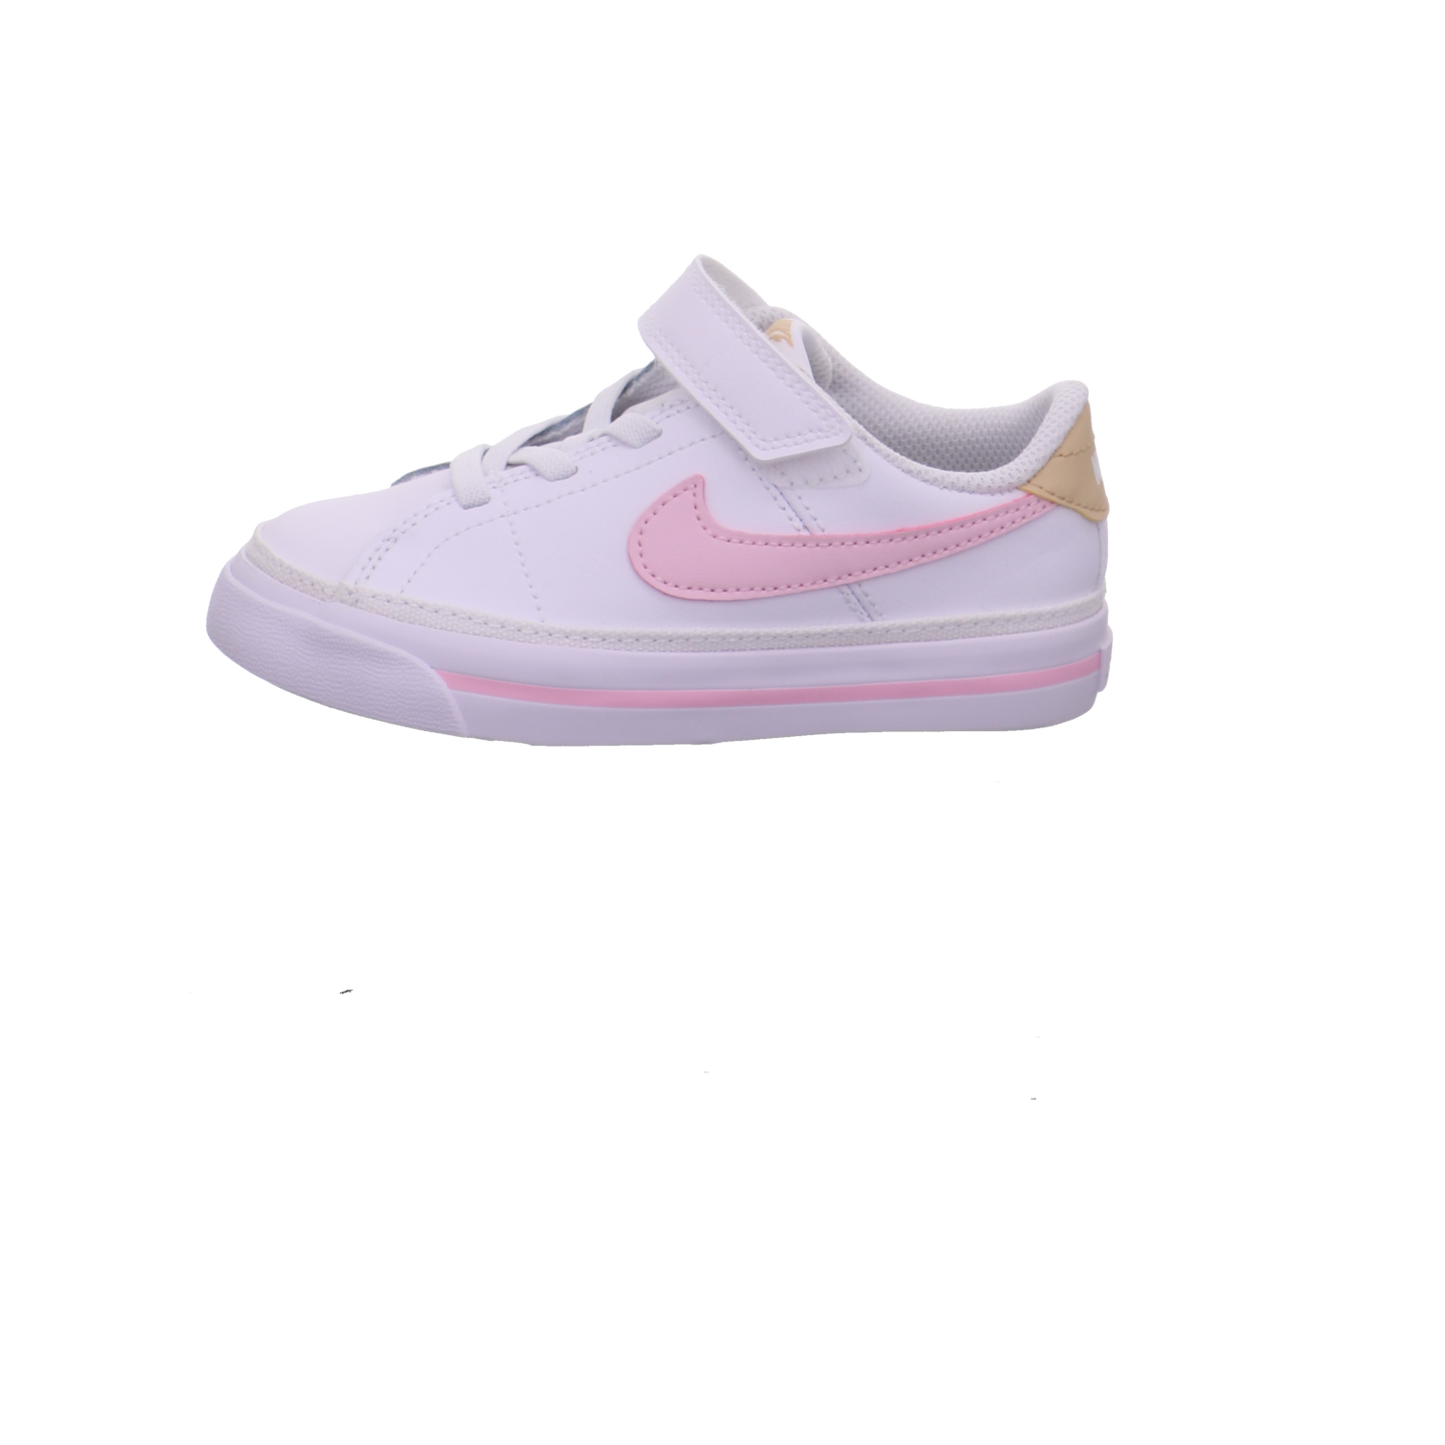 Nike Halbschuhe weiß rosa/rot Bild1